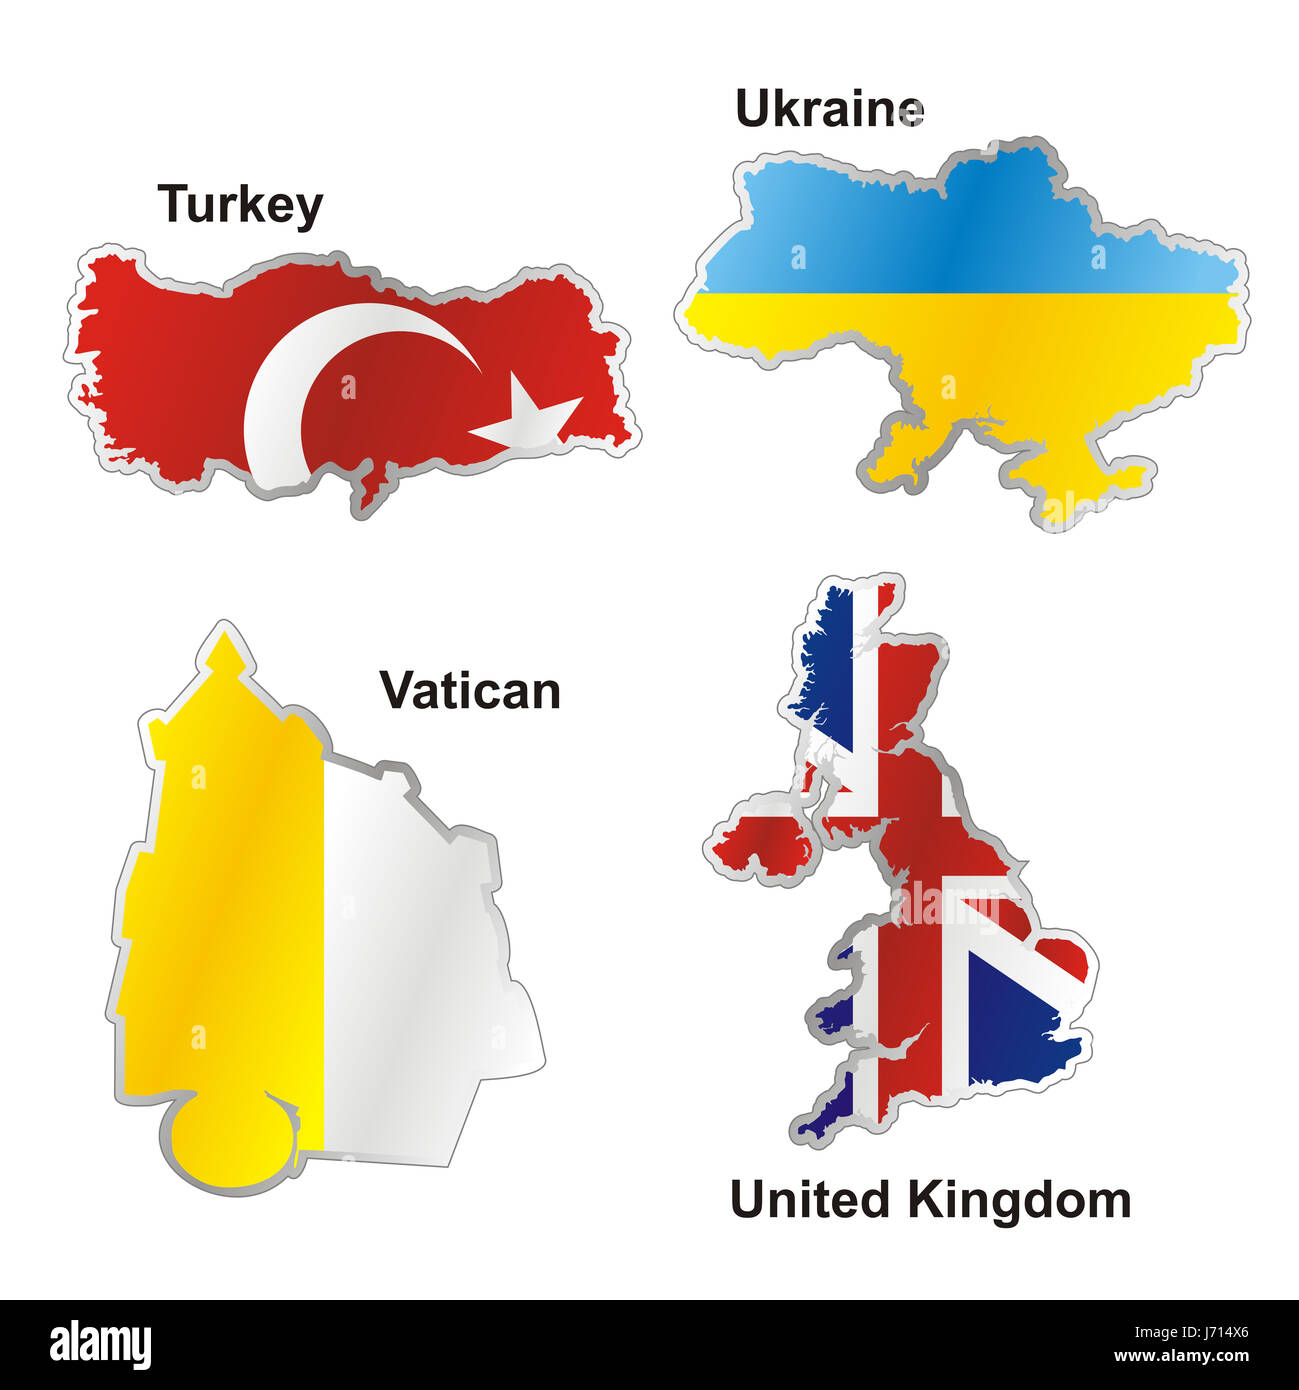 Flagge Türkei Ukraine Vereinigte Königreich Atlas Karte des Vatikans Welt isoliert Stockfoto